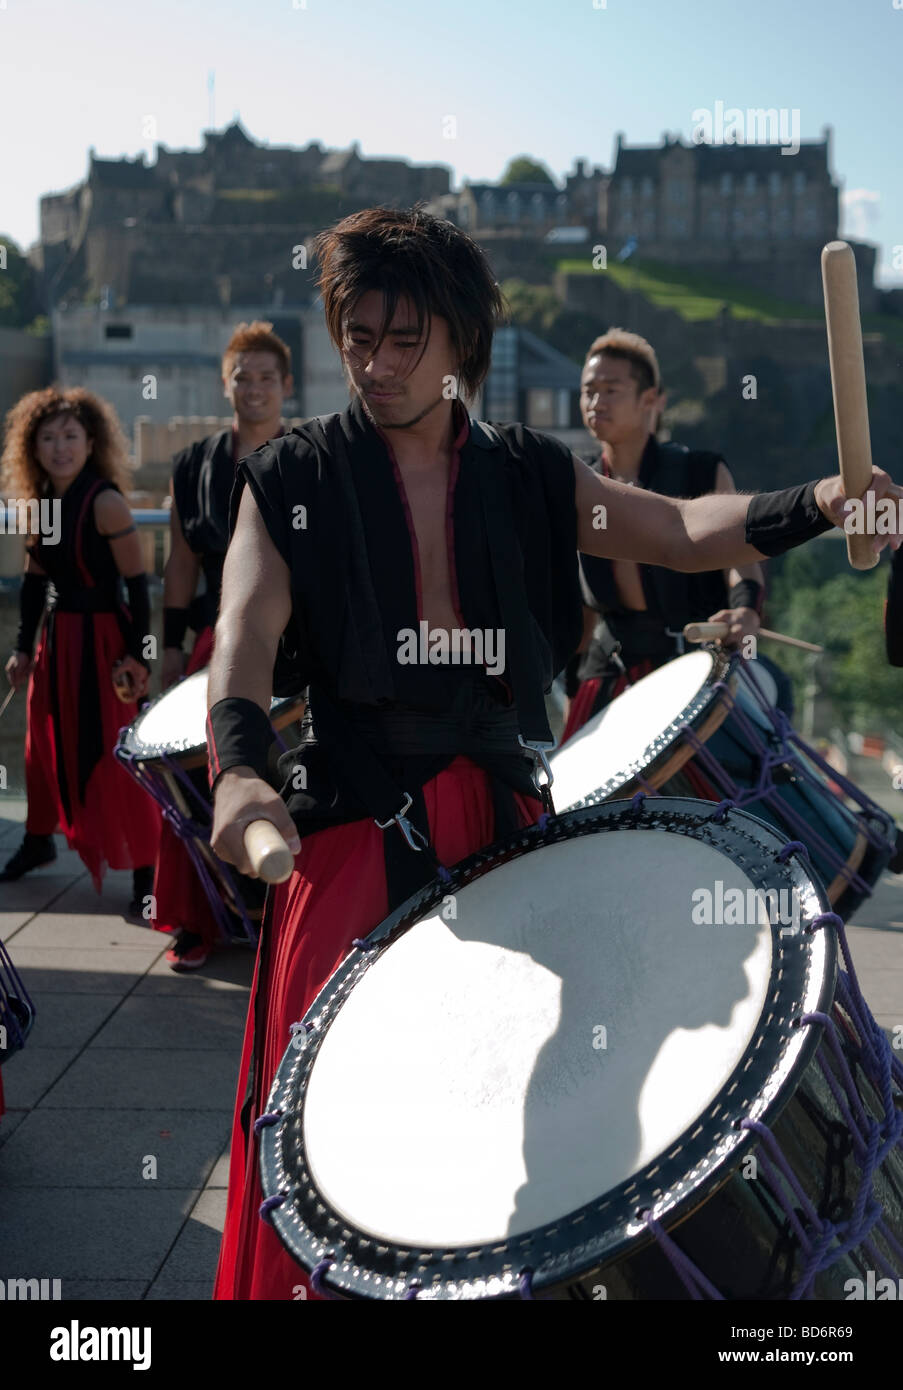 Samurai Japanese drumming entreprise assurant à l'Edinburgh Fringe Festival, Ecosse, Royaume-Uni Banque D'Images